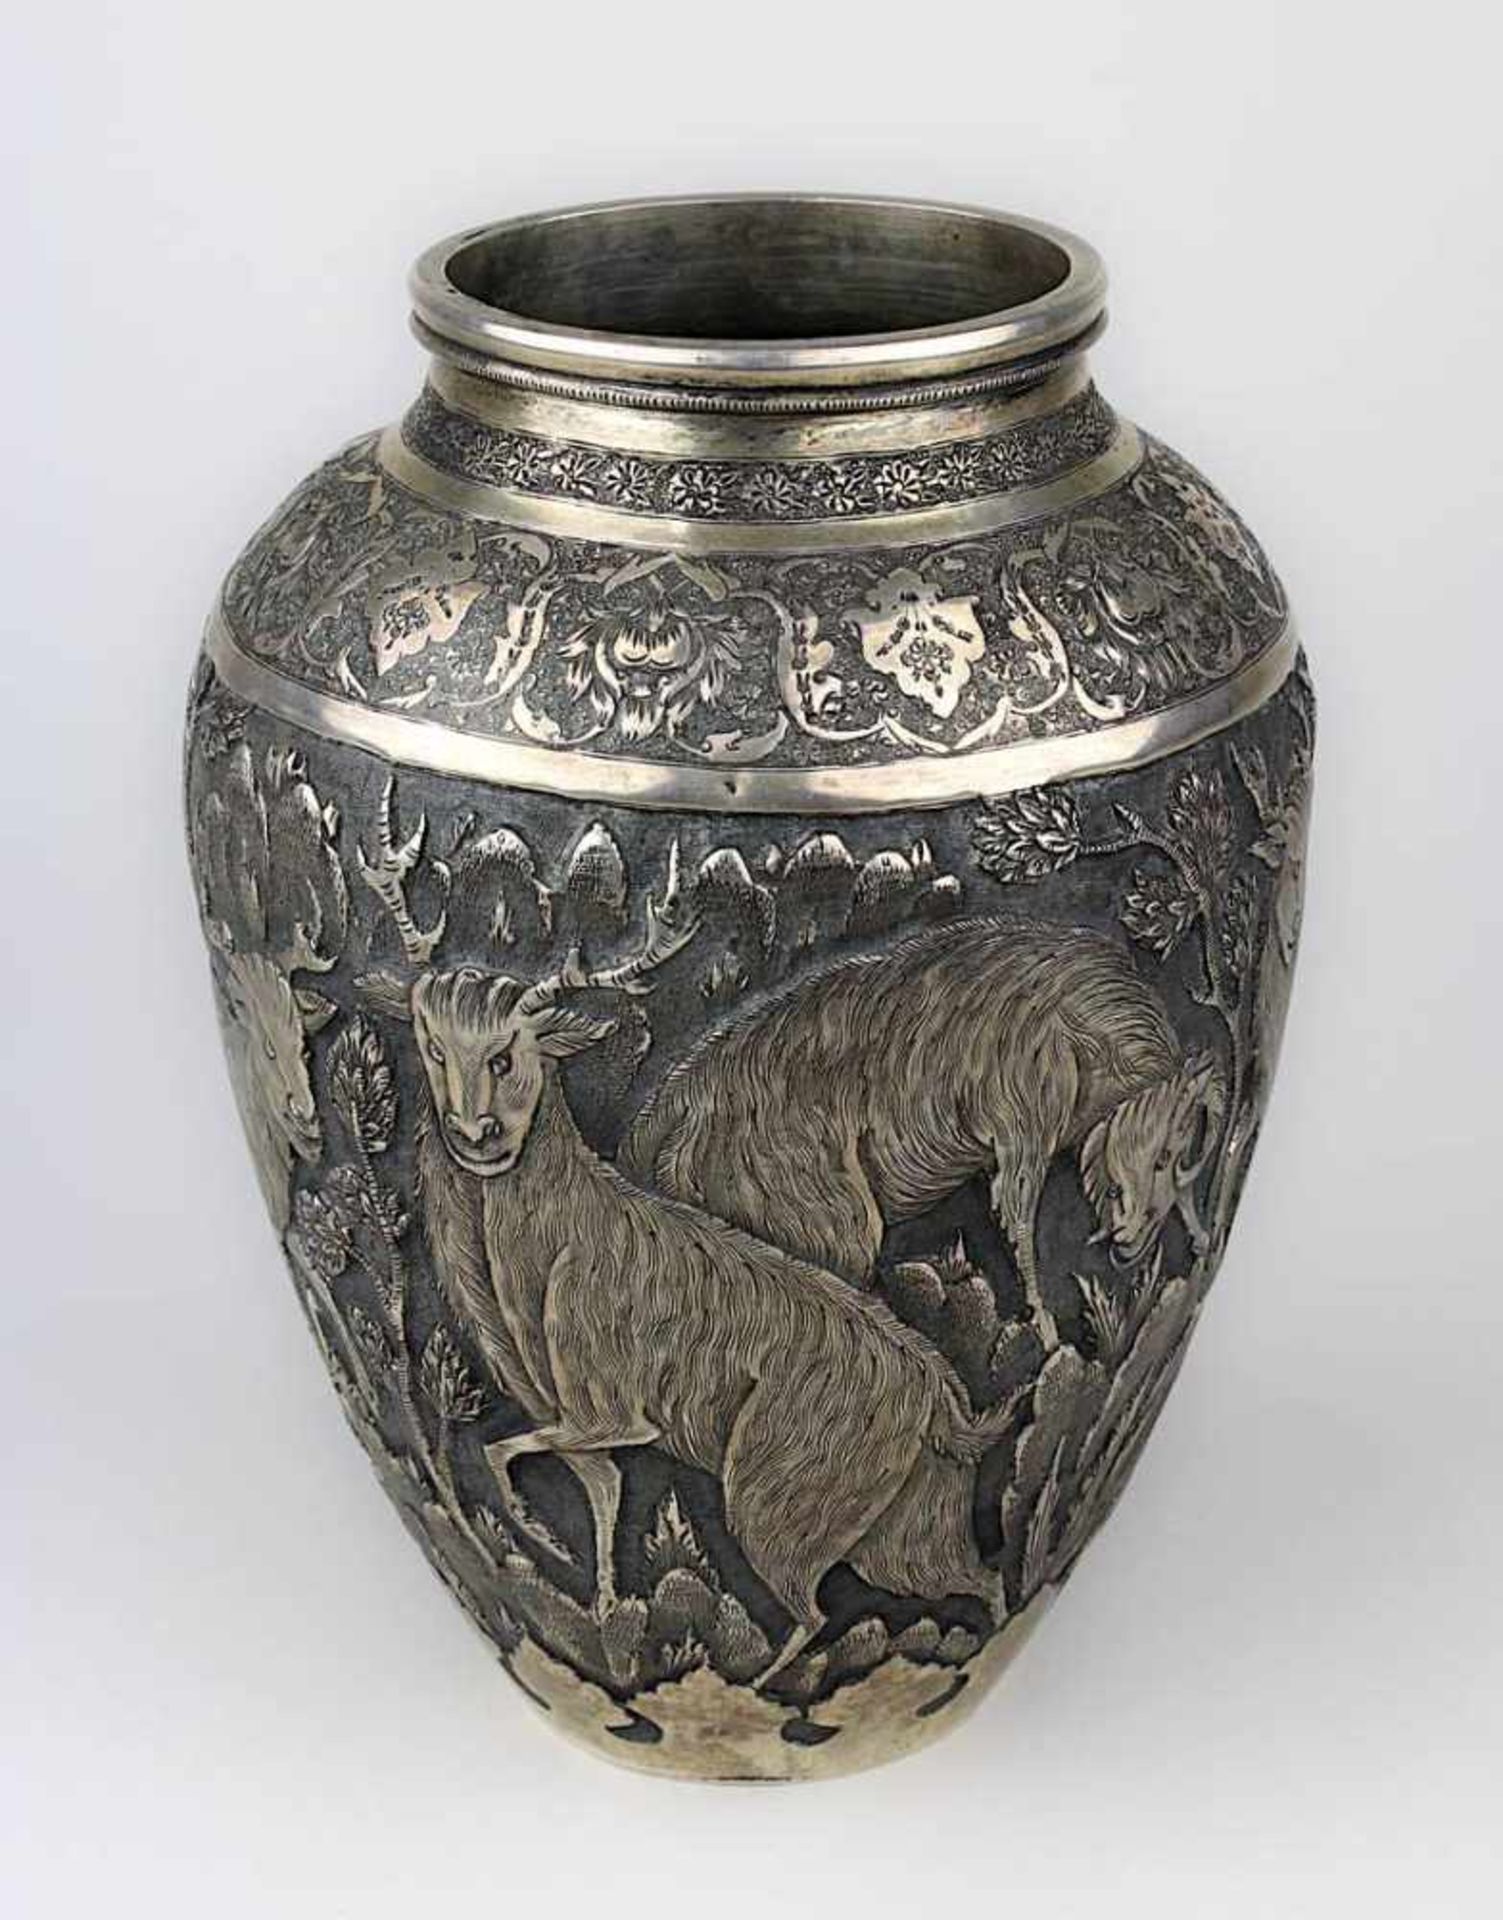 Silbervase mit Paarhufer-Dekor, Persien um 1900, Wandung mit reliefiertem Dekor von Hirschen,